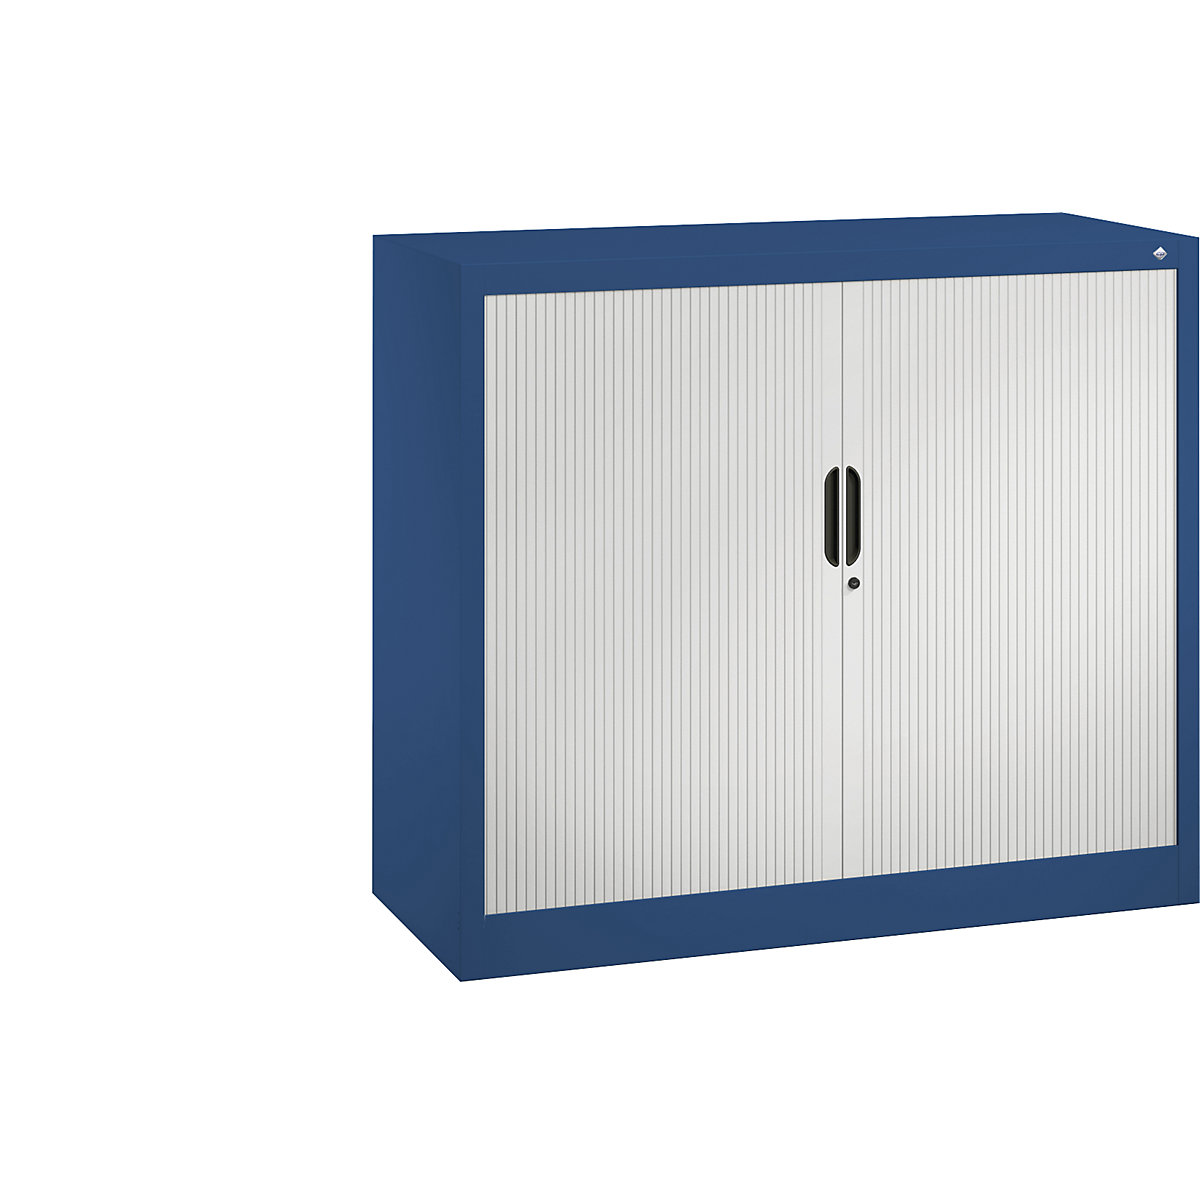 Roller shutter cupboard with horizontal shutter – C+P, HxWxD 1030 x 1200 x 420 mm, 2 shelves, 2.5 file heights, gentian blue / light grey-6